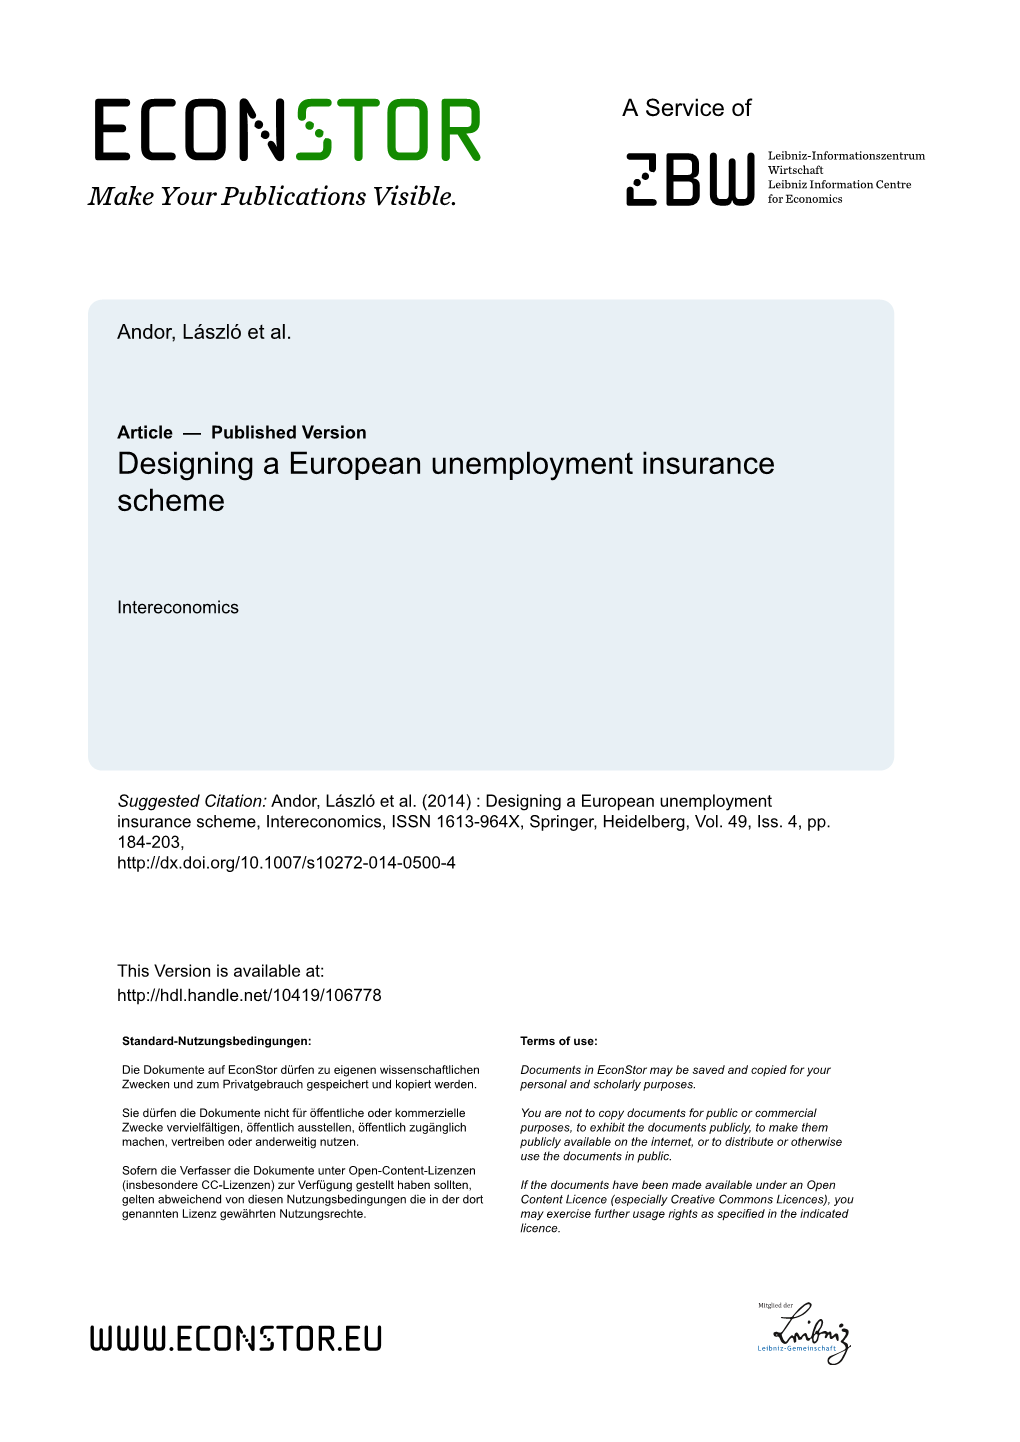 Designing a European Unemployment Insurance Scheme